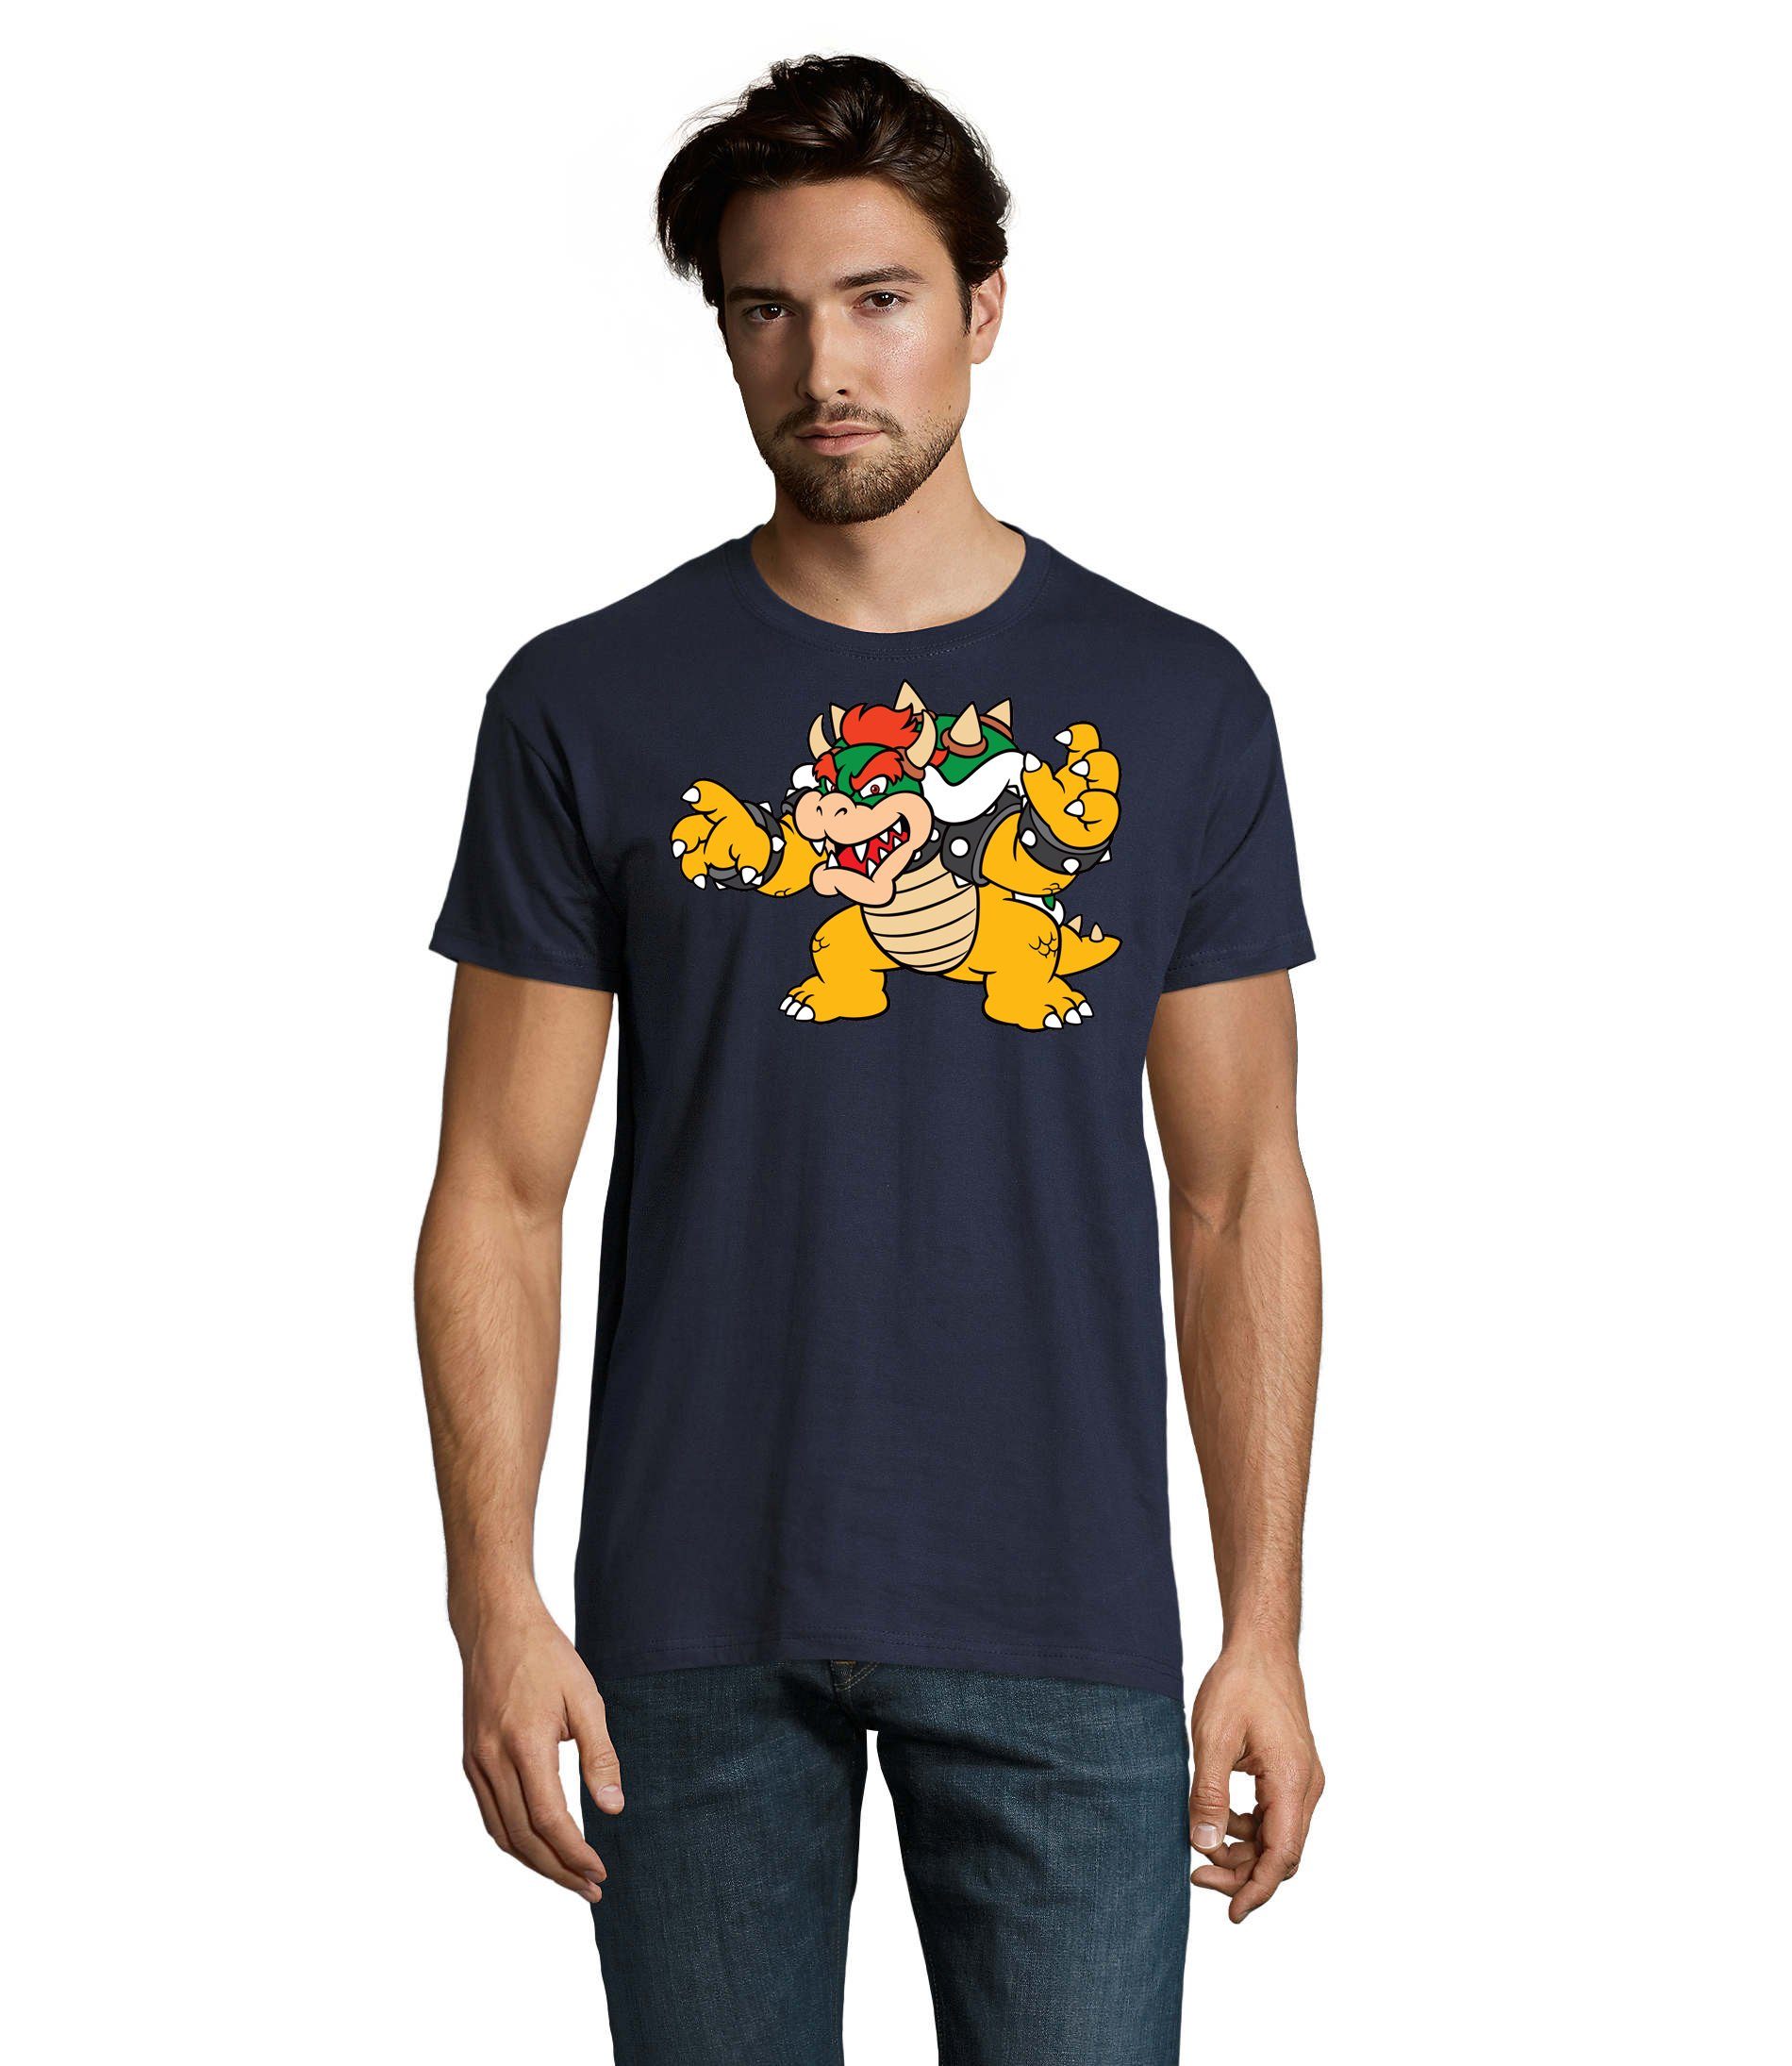 Nintendo Herren Mario Navyblau Luigi Gaming Gamer T-Shirt Konsole Blondie & Yoshi Game Brownie